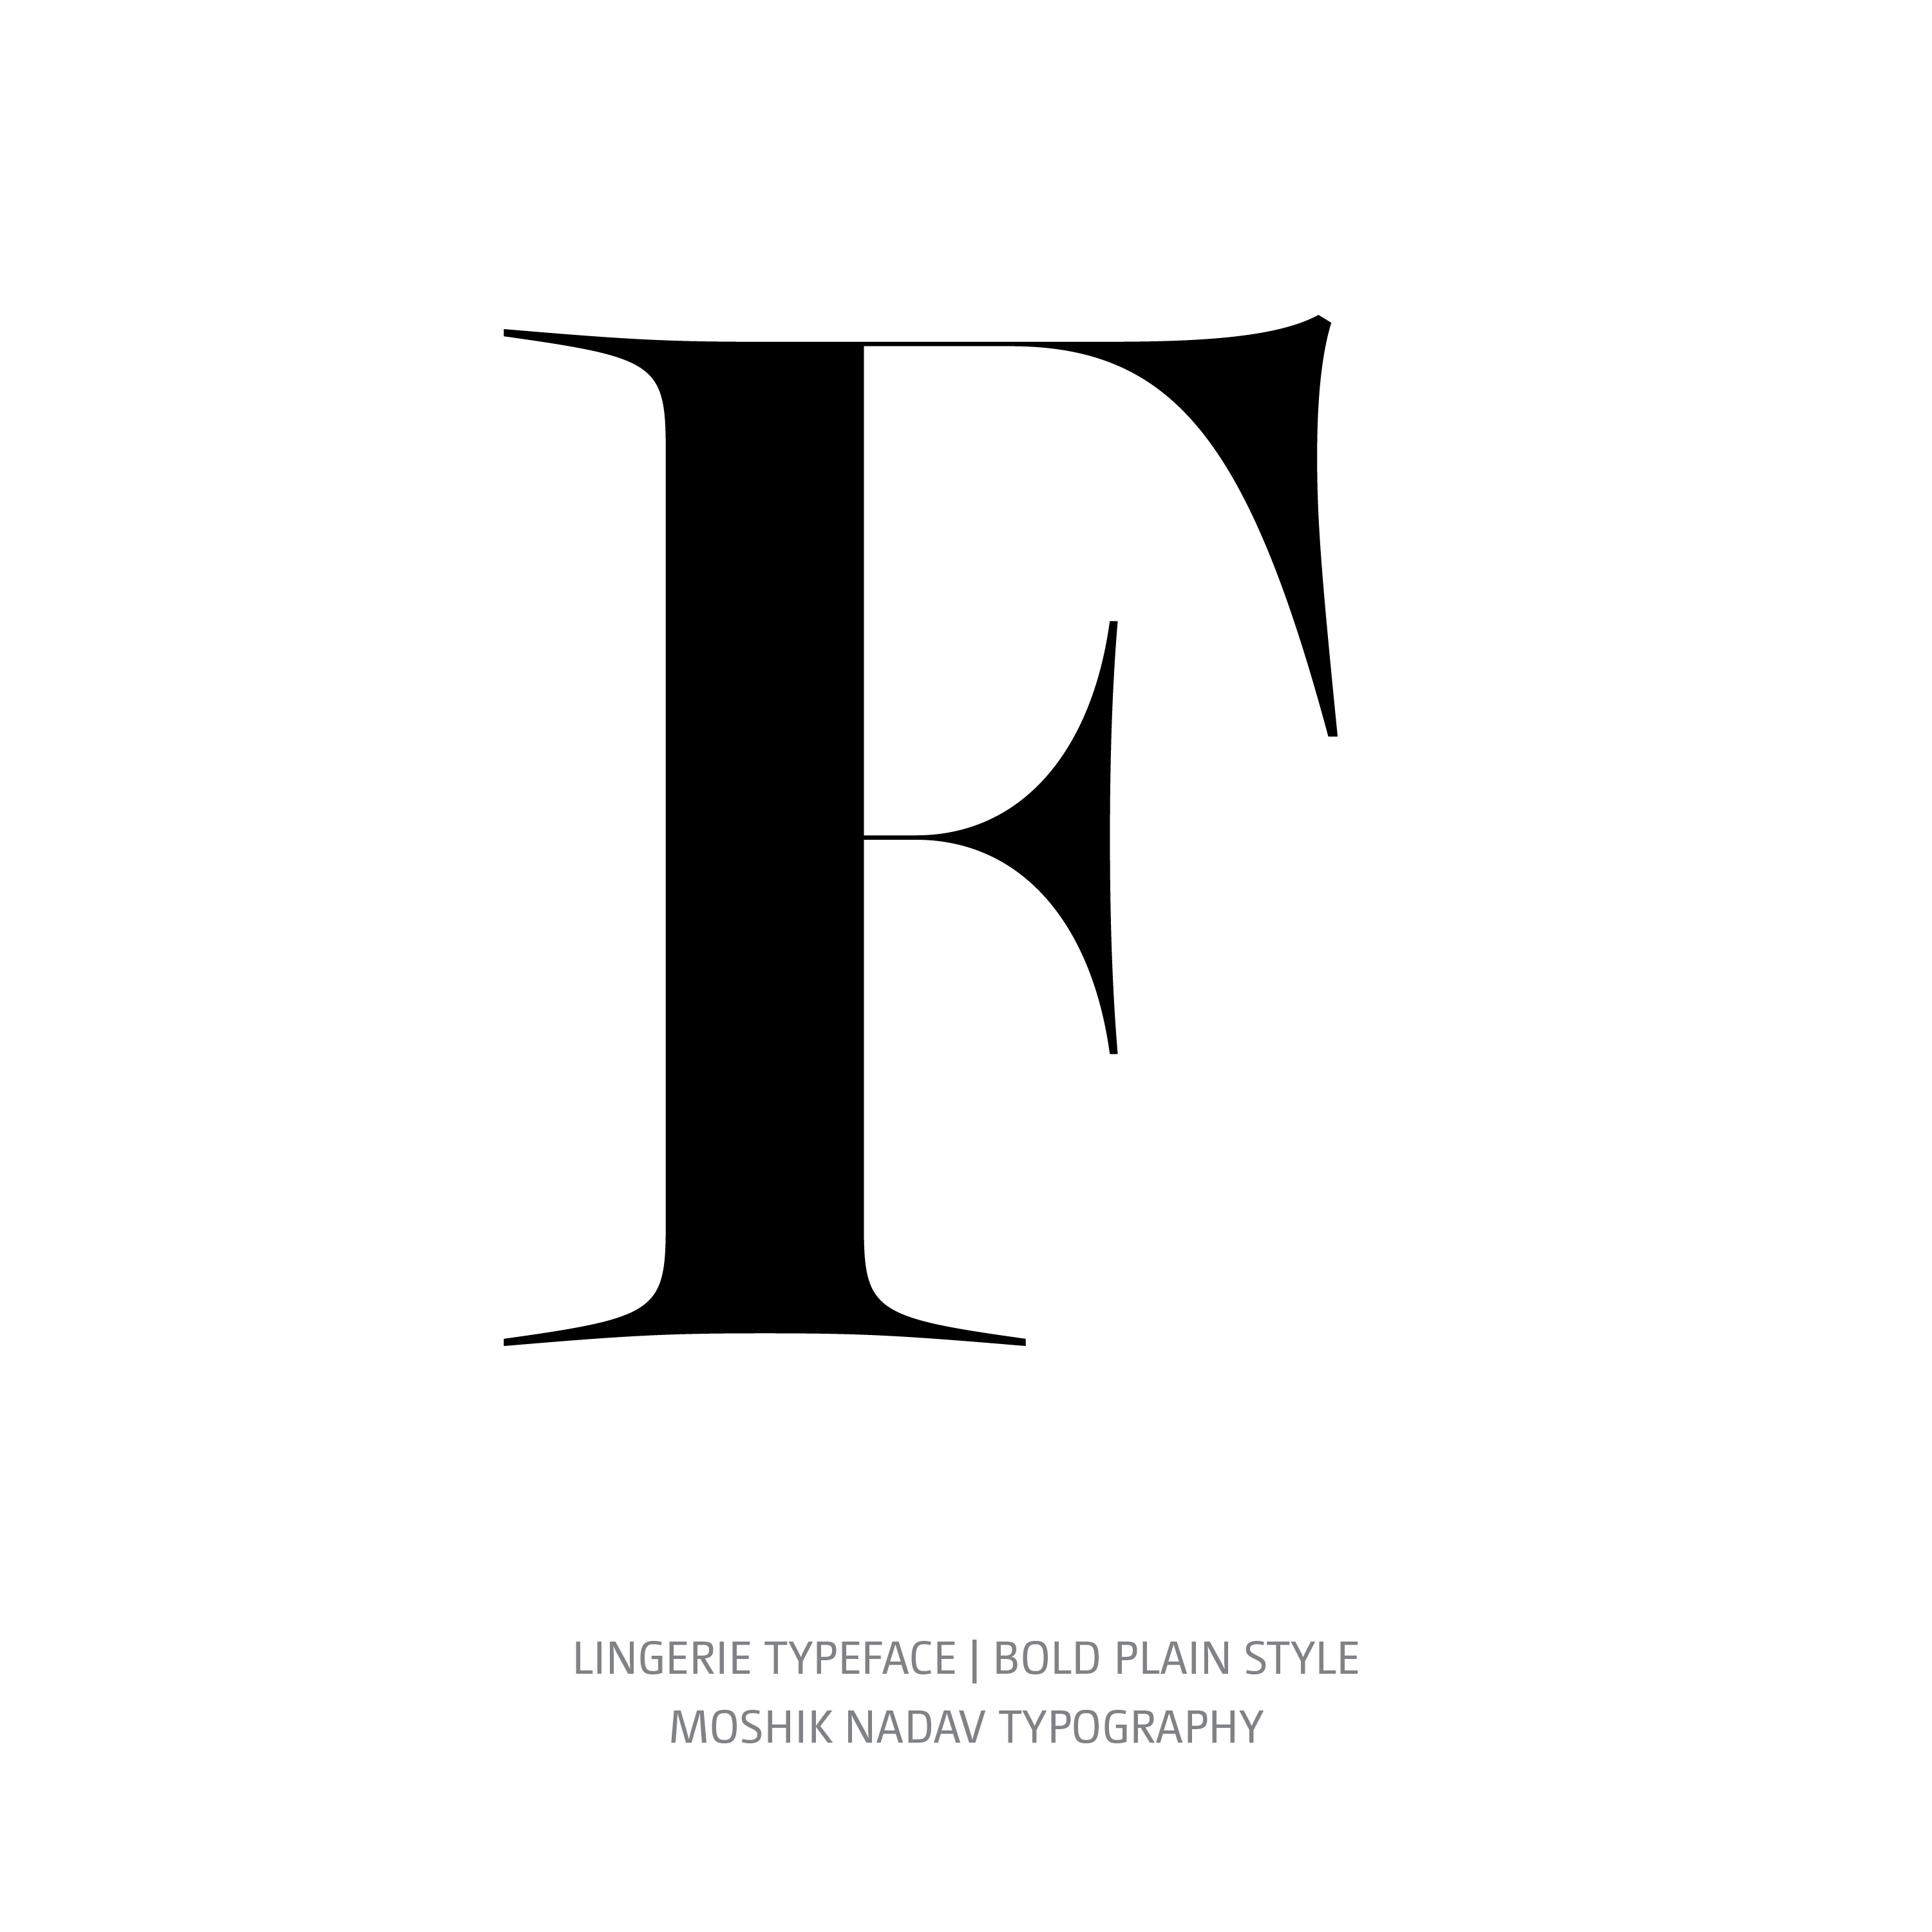 Lingerie Typeface Bold Plain F